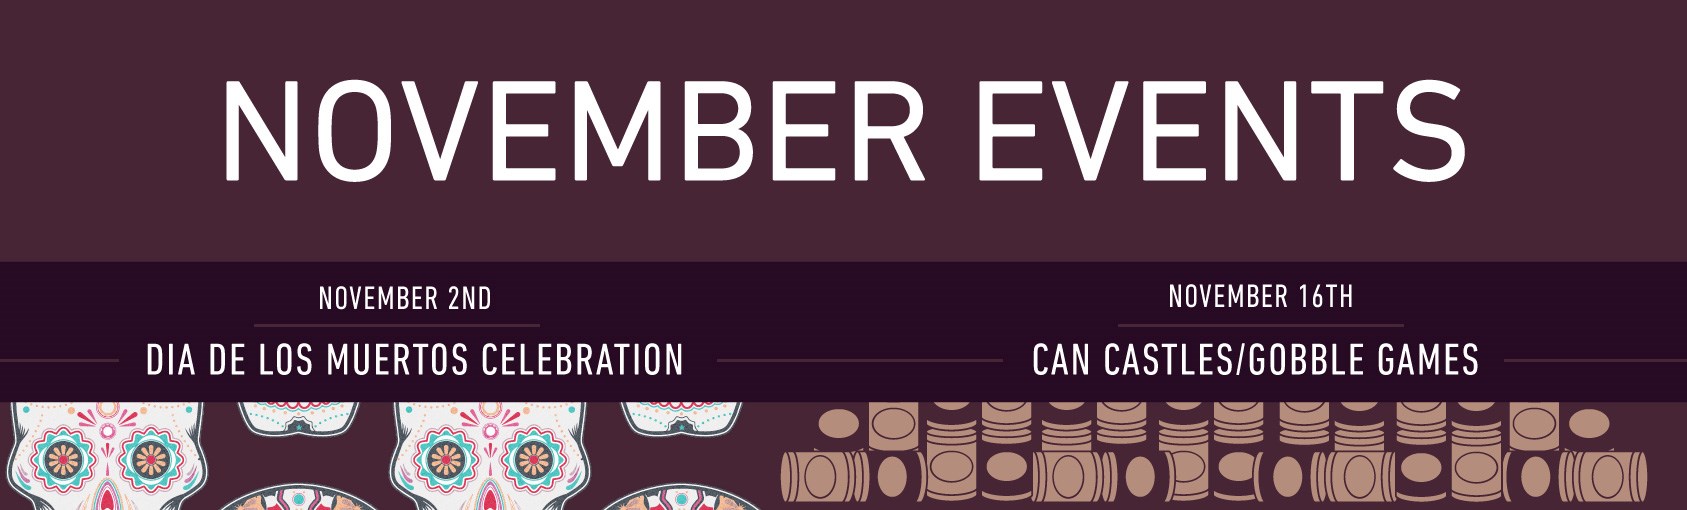 November Events banner